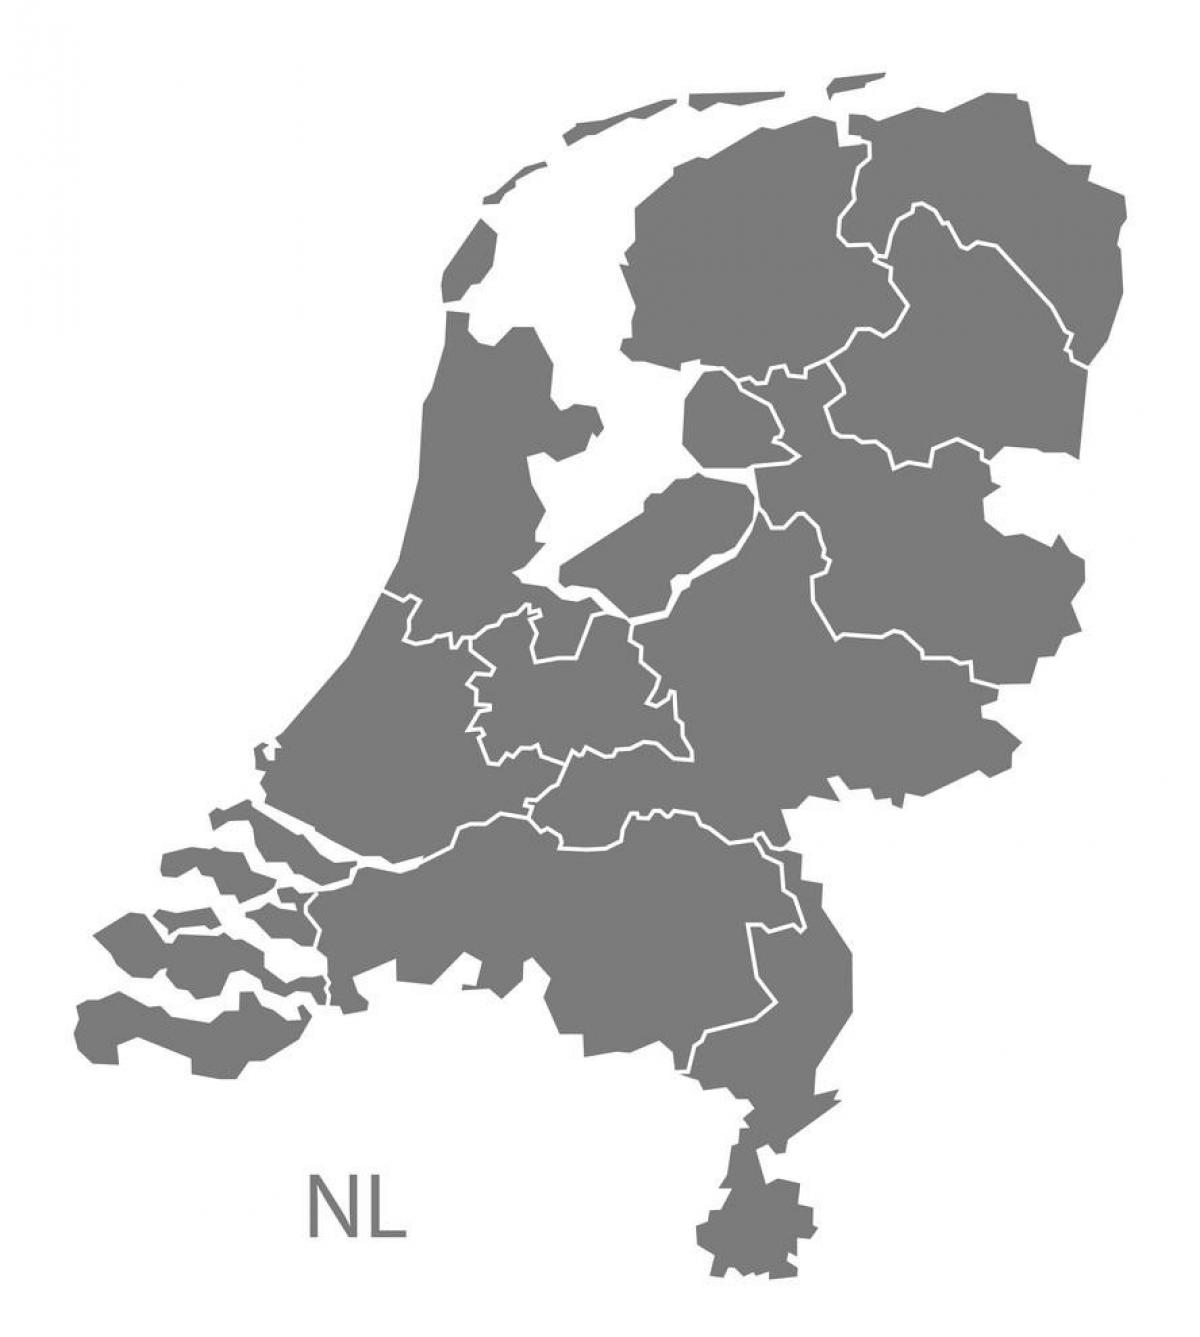 荷兰矢量地图